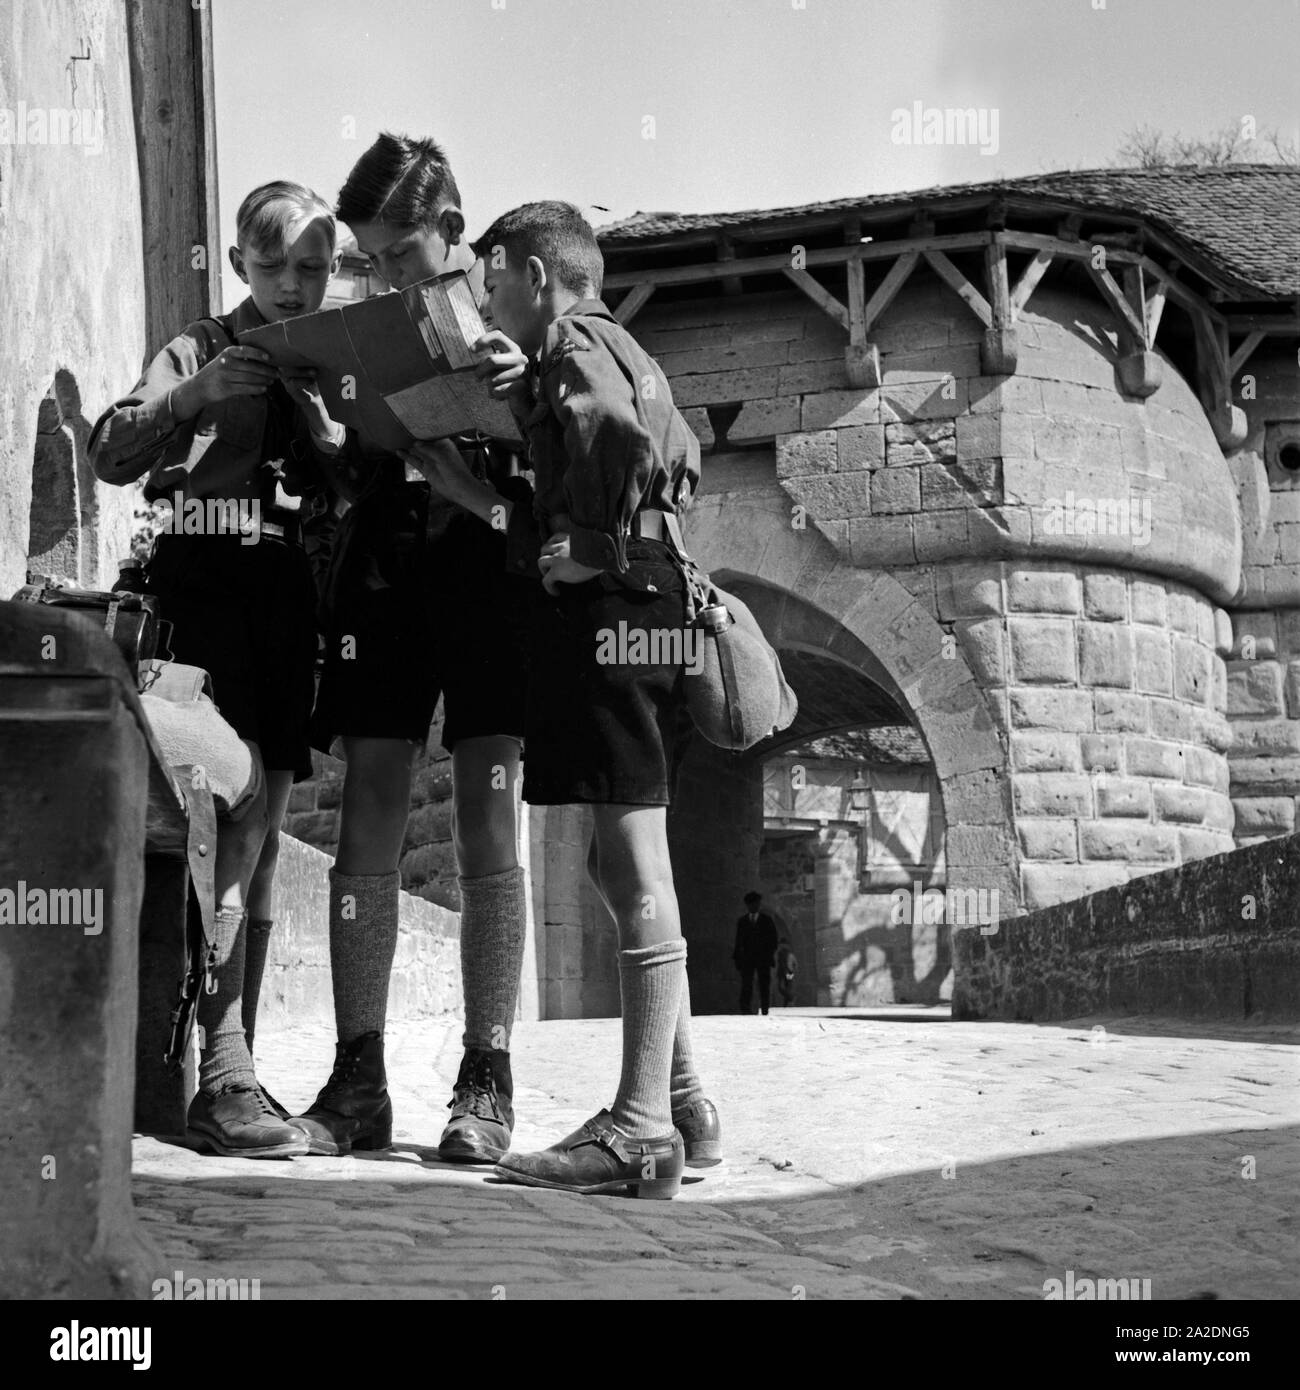 Drei Hitlerjungen studieren den Stadtplan von Rothenburg ob der Tauber, Deutschland 1930er Jahre. Three Hitler youths studying the map of Rothenburg ob der Tauber, Germany 1930s. Stock Photo